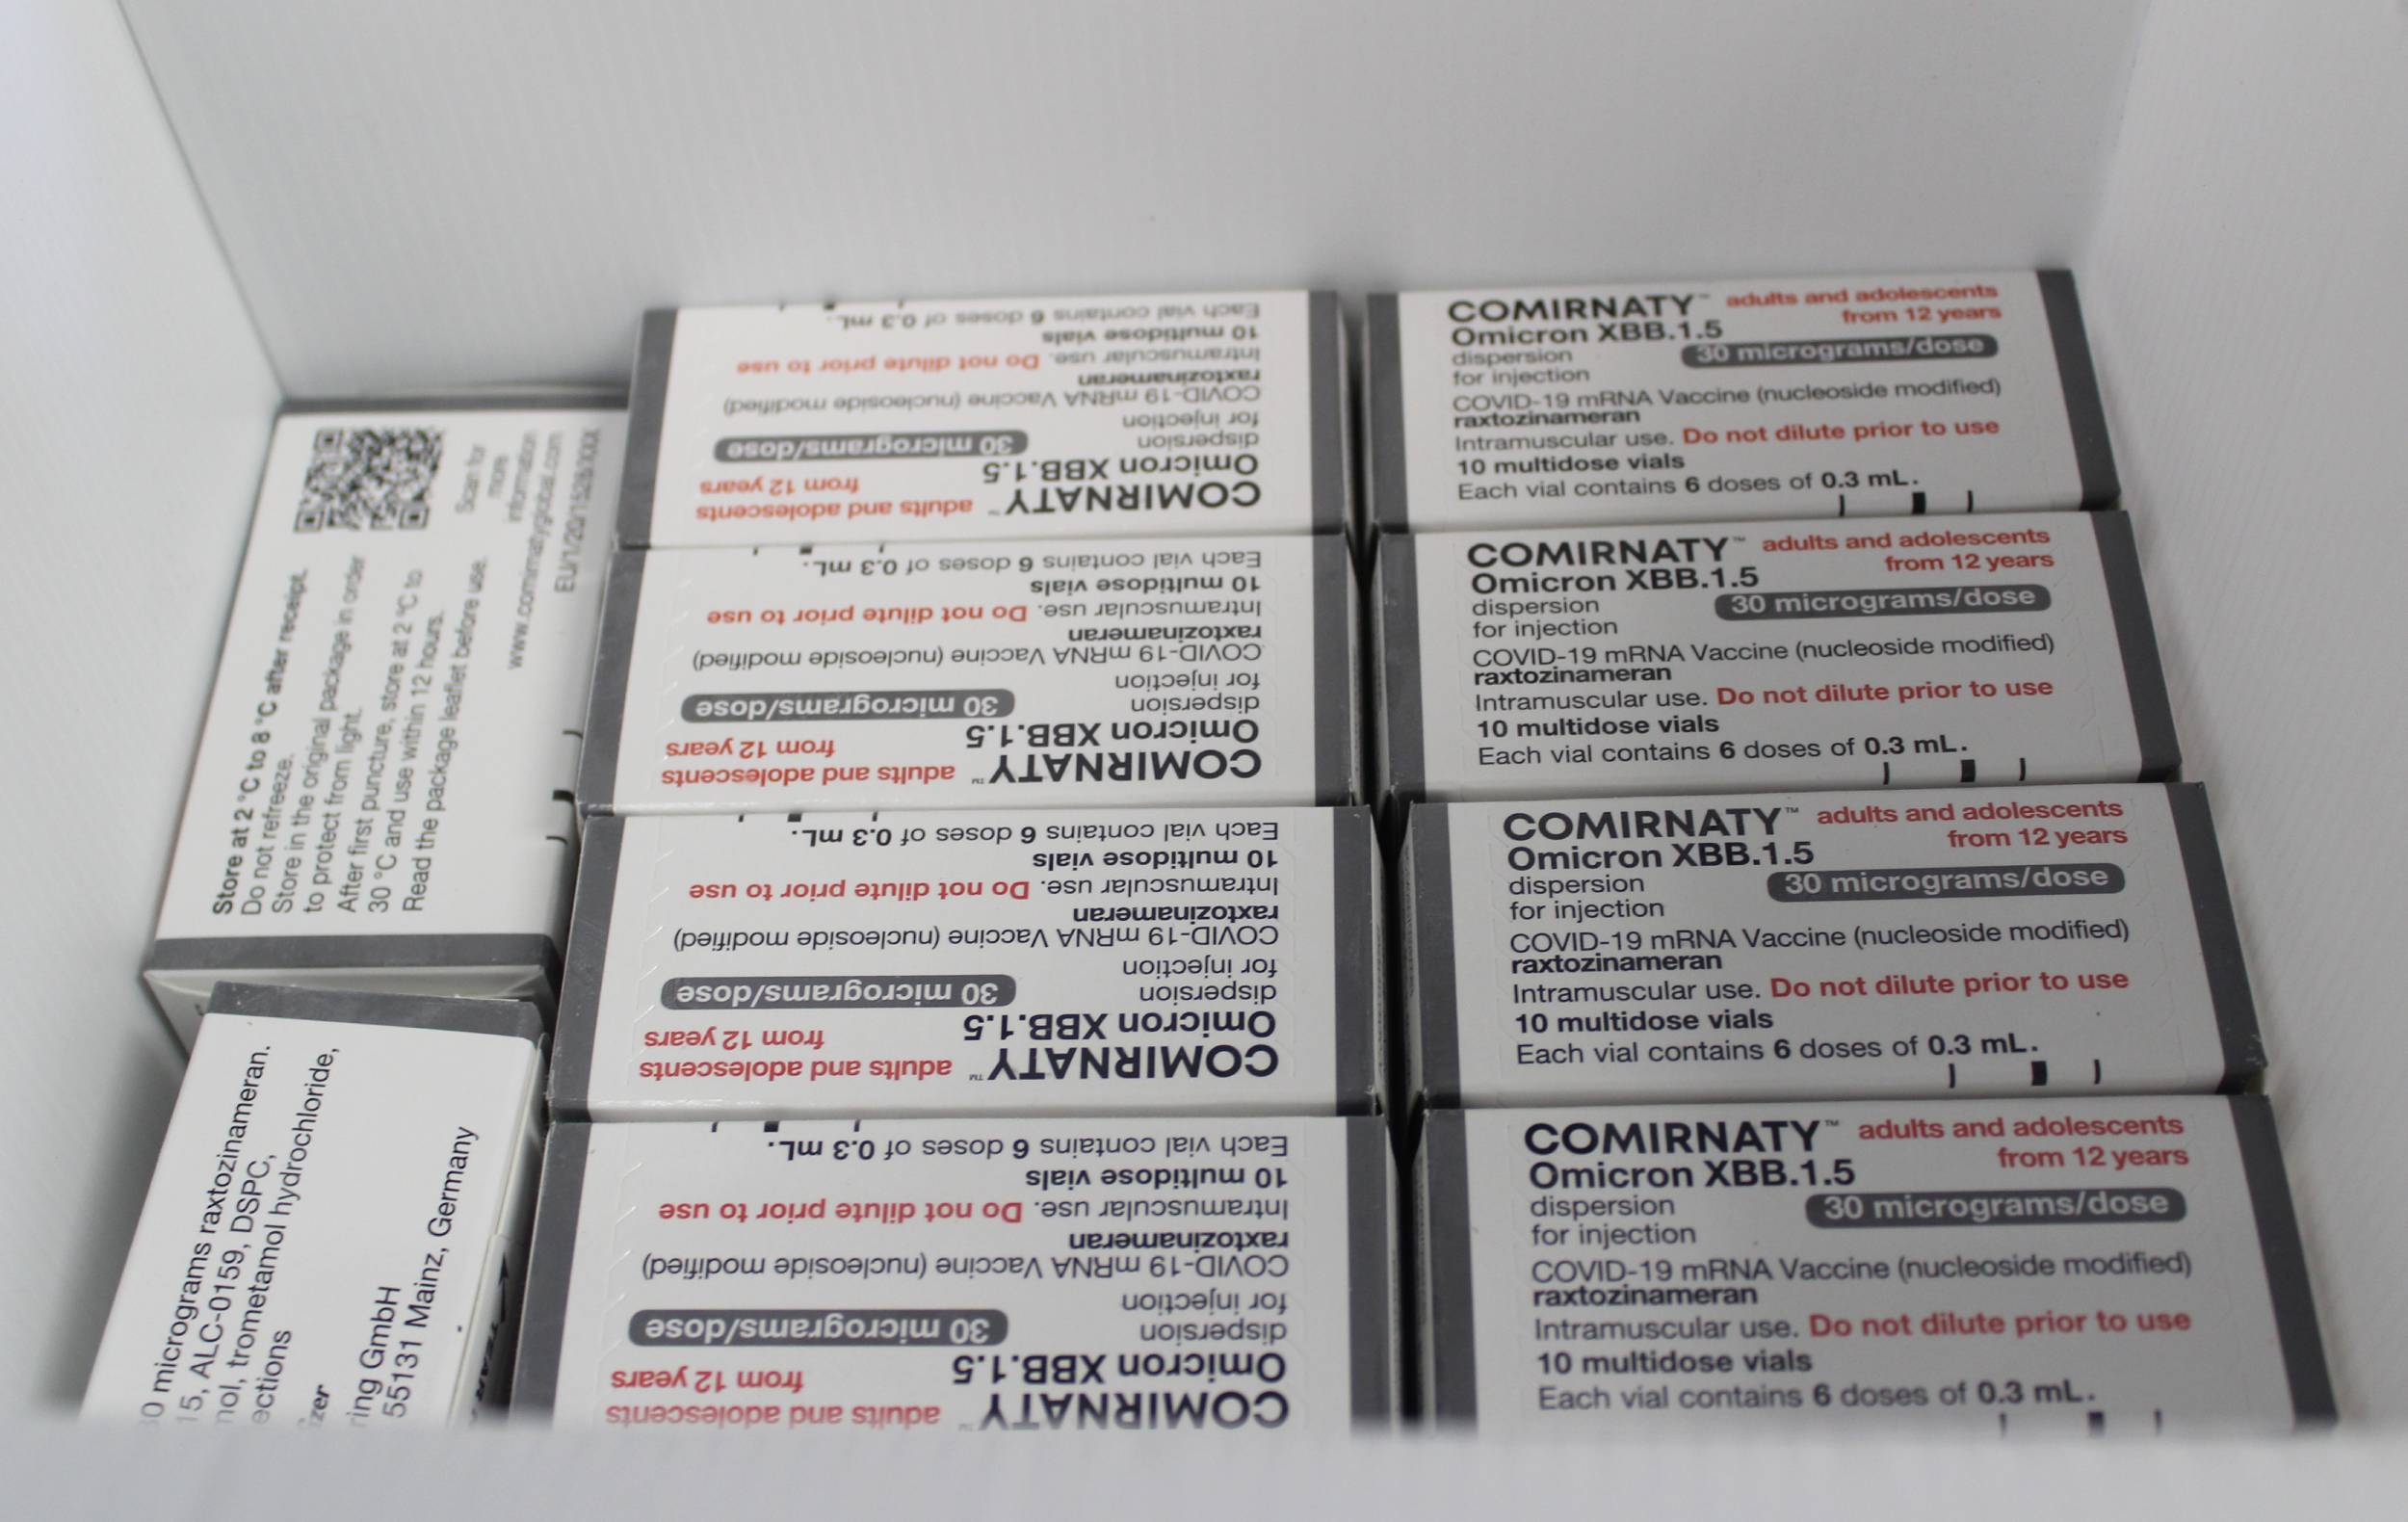 Arrivati oggi a San Marino i nuovi vaccini contro il Covid-19: ecco come prenotarli